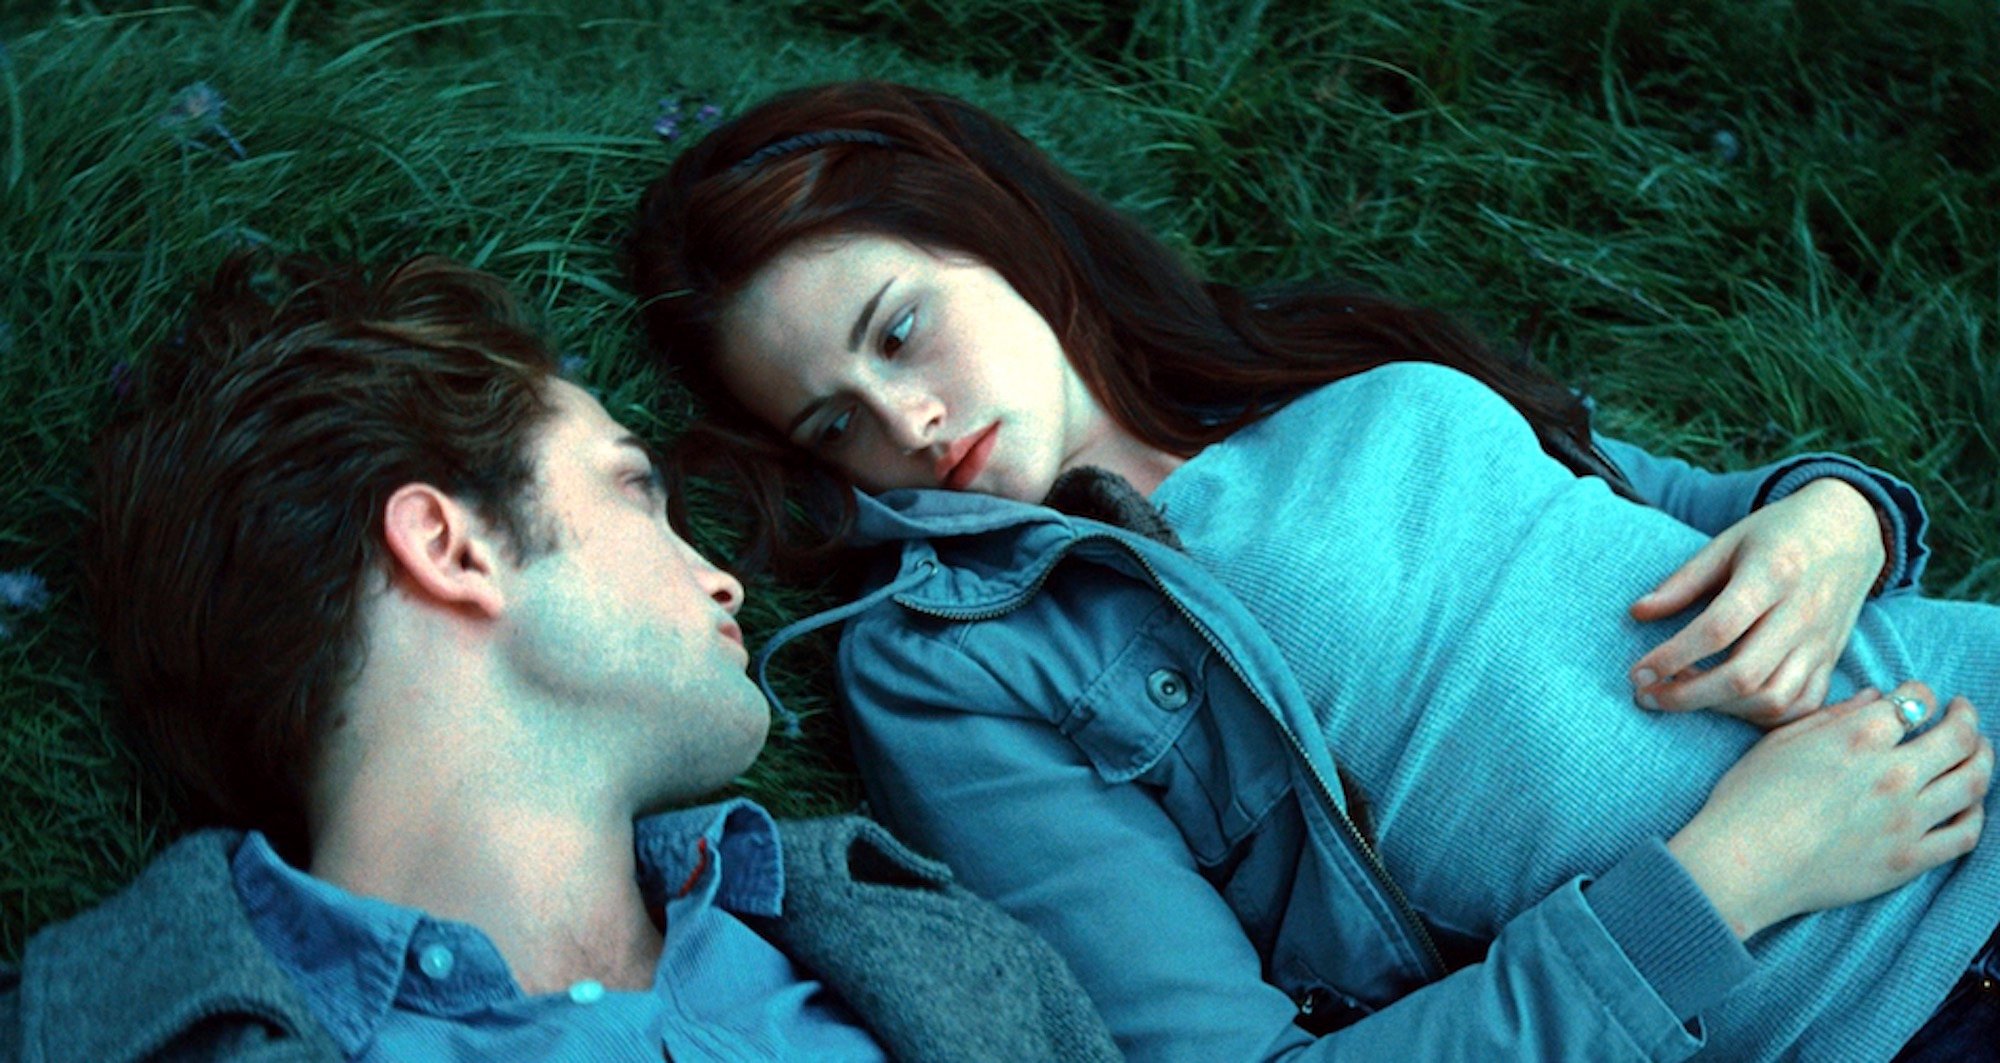 Edward Cullen (Robert Pattinson) and Bella Swan (Kristen Stewart) in their meadow in 'Twilight.'